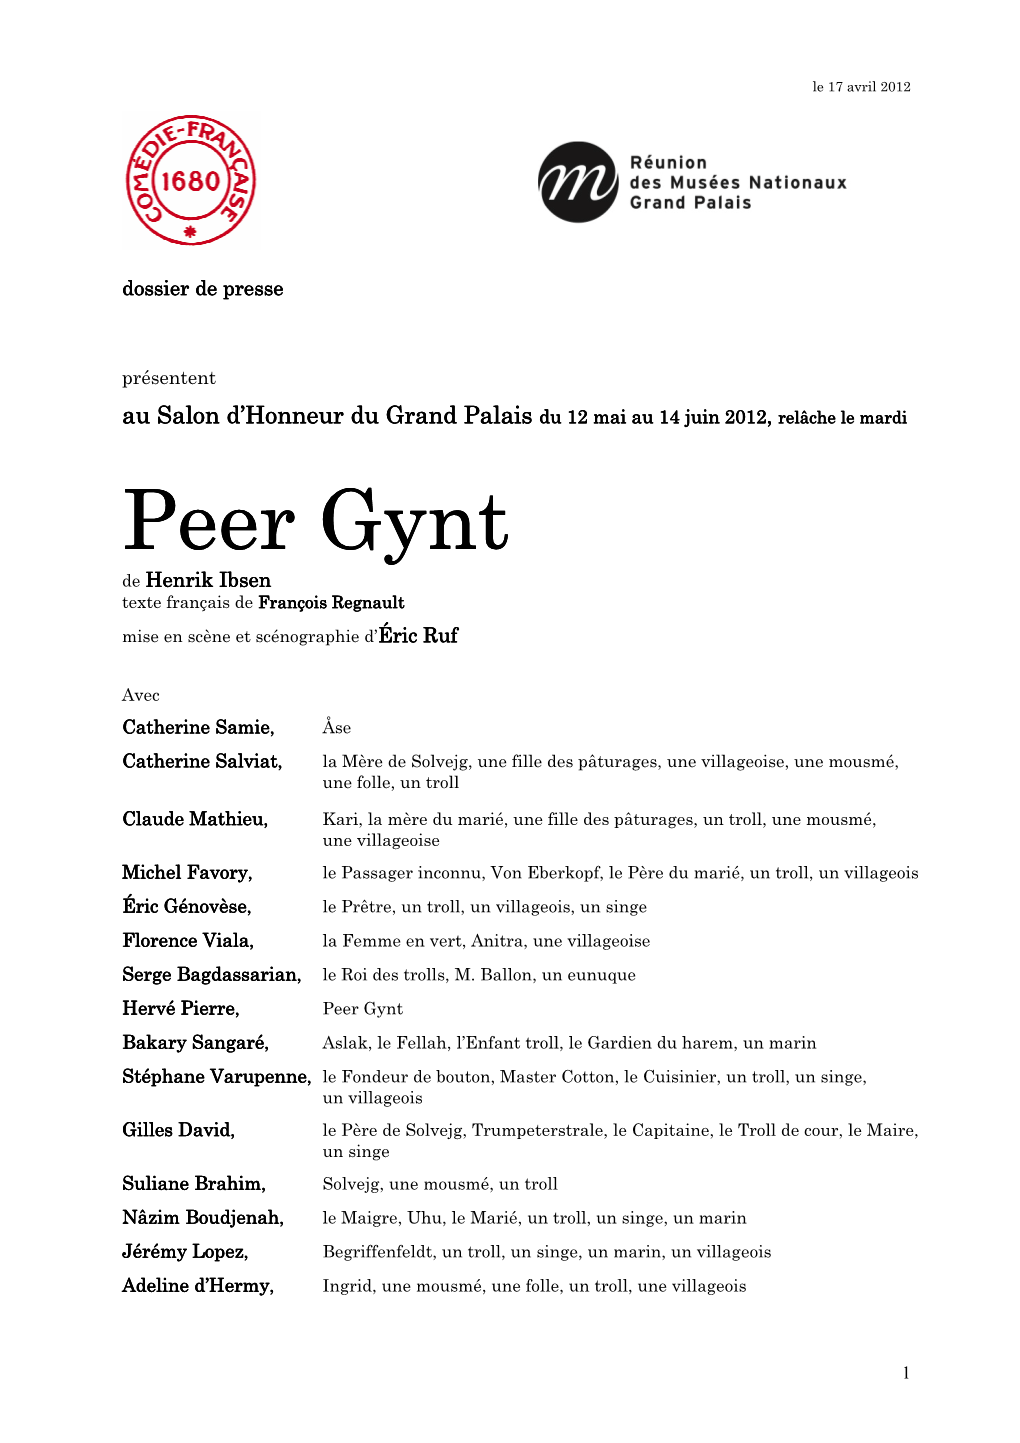 Dossier De Presse Peer Gynt Mai 2012